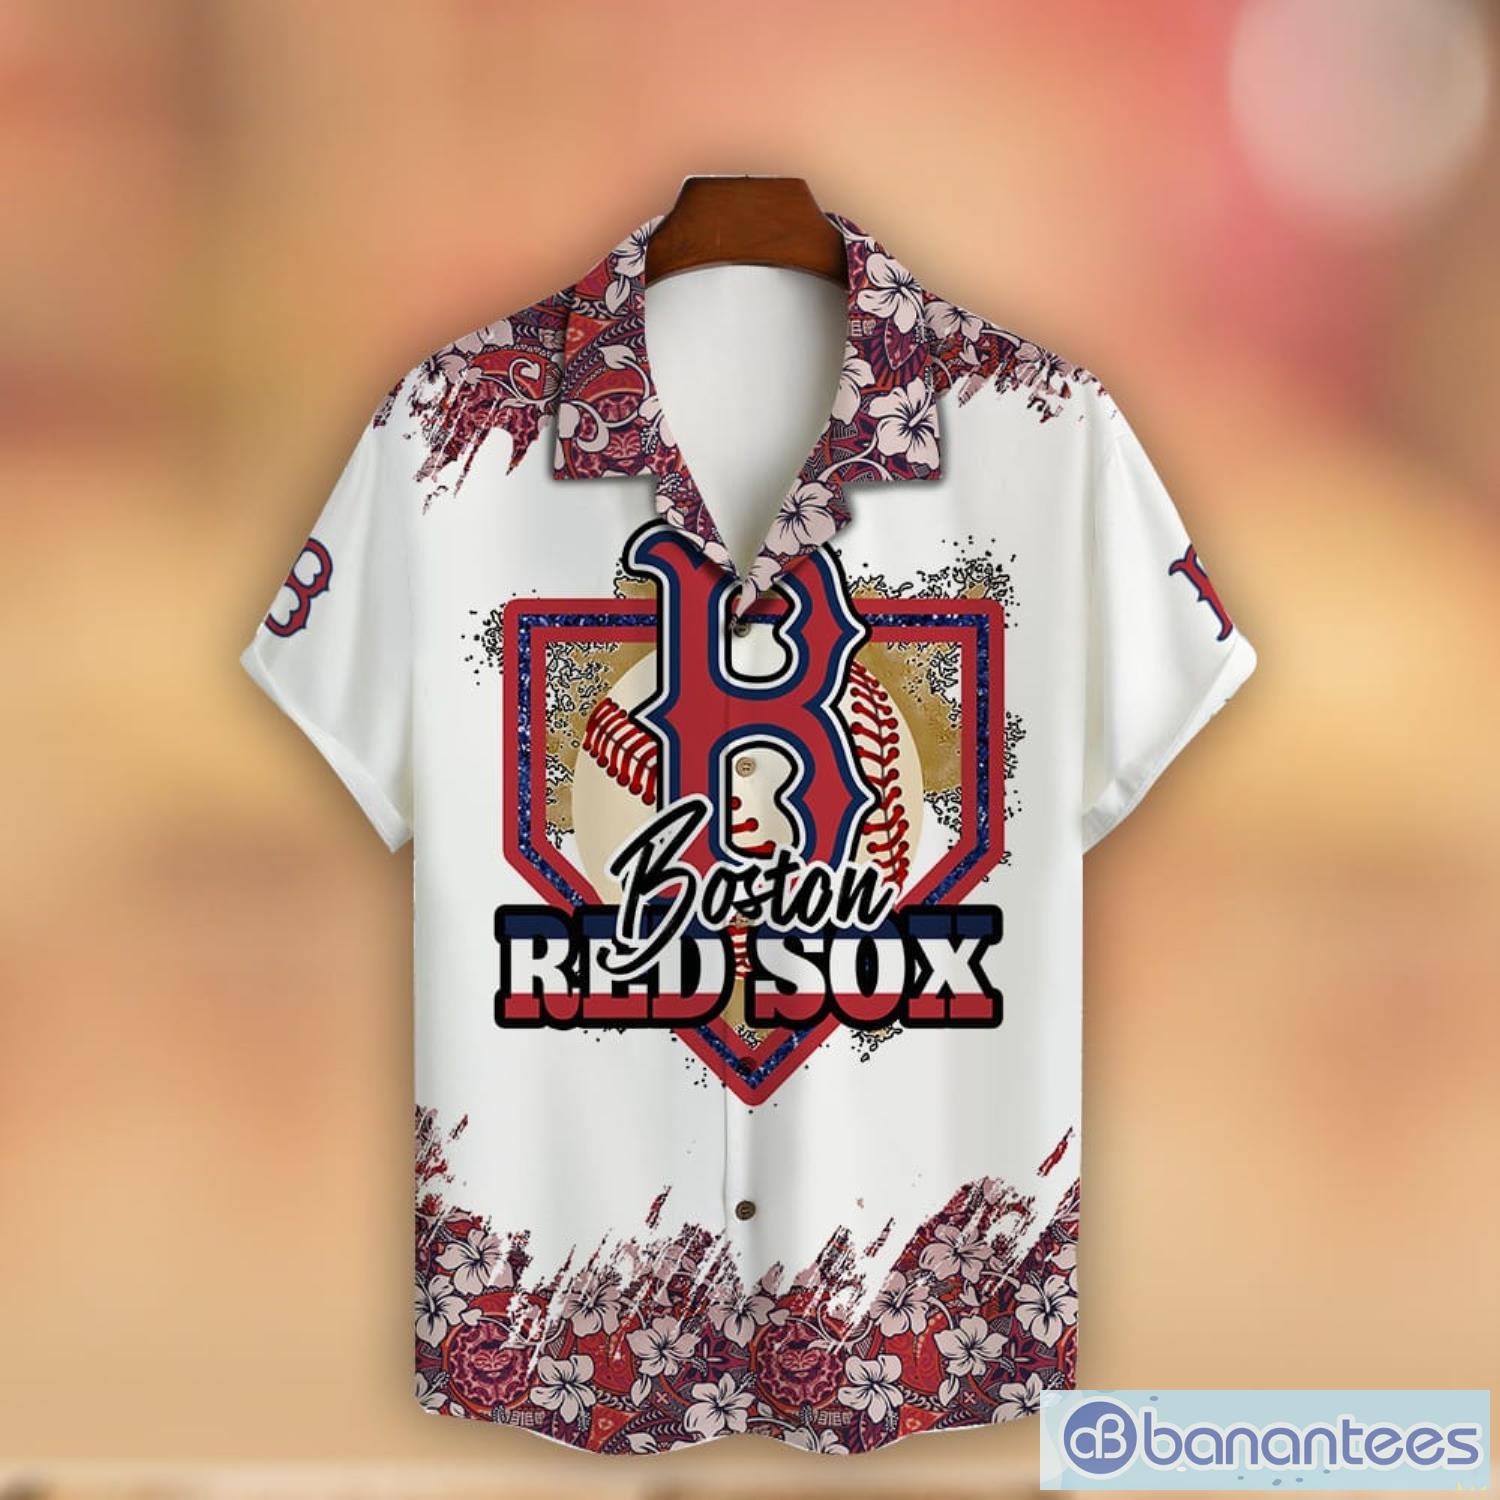 Boston Red Sox Red Sox Shirt Baseball Shirt Vintage Red